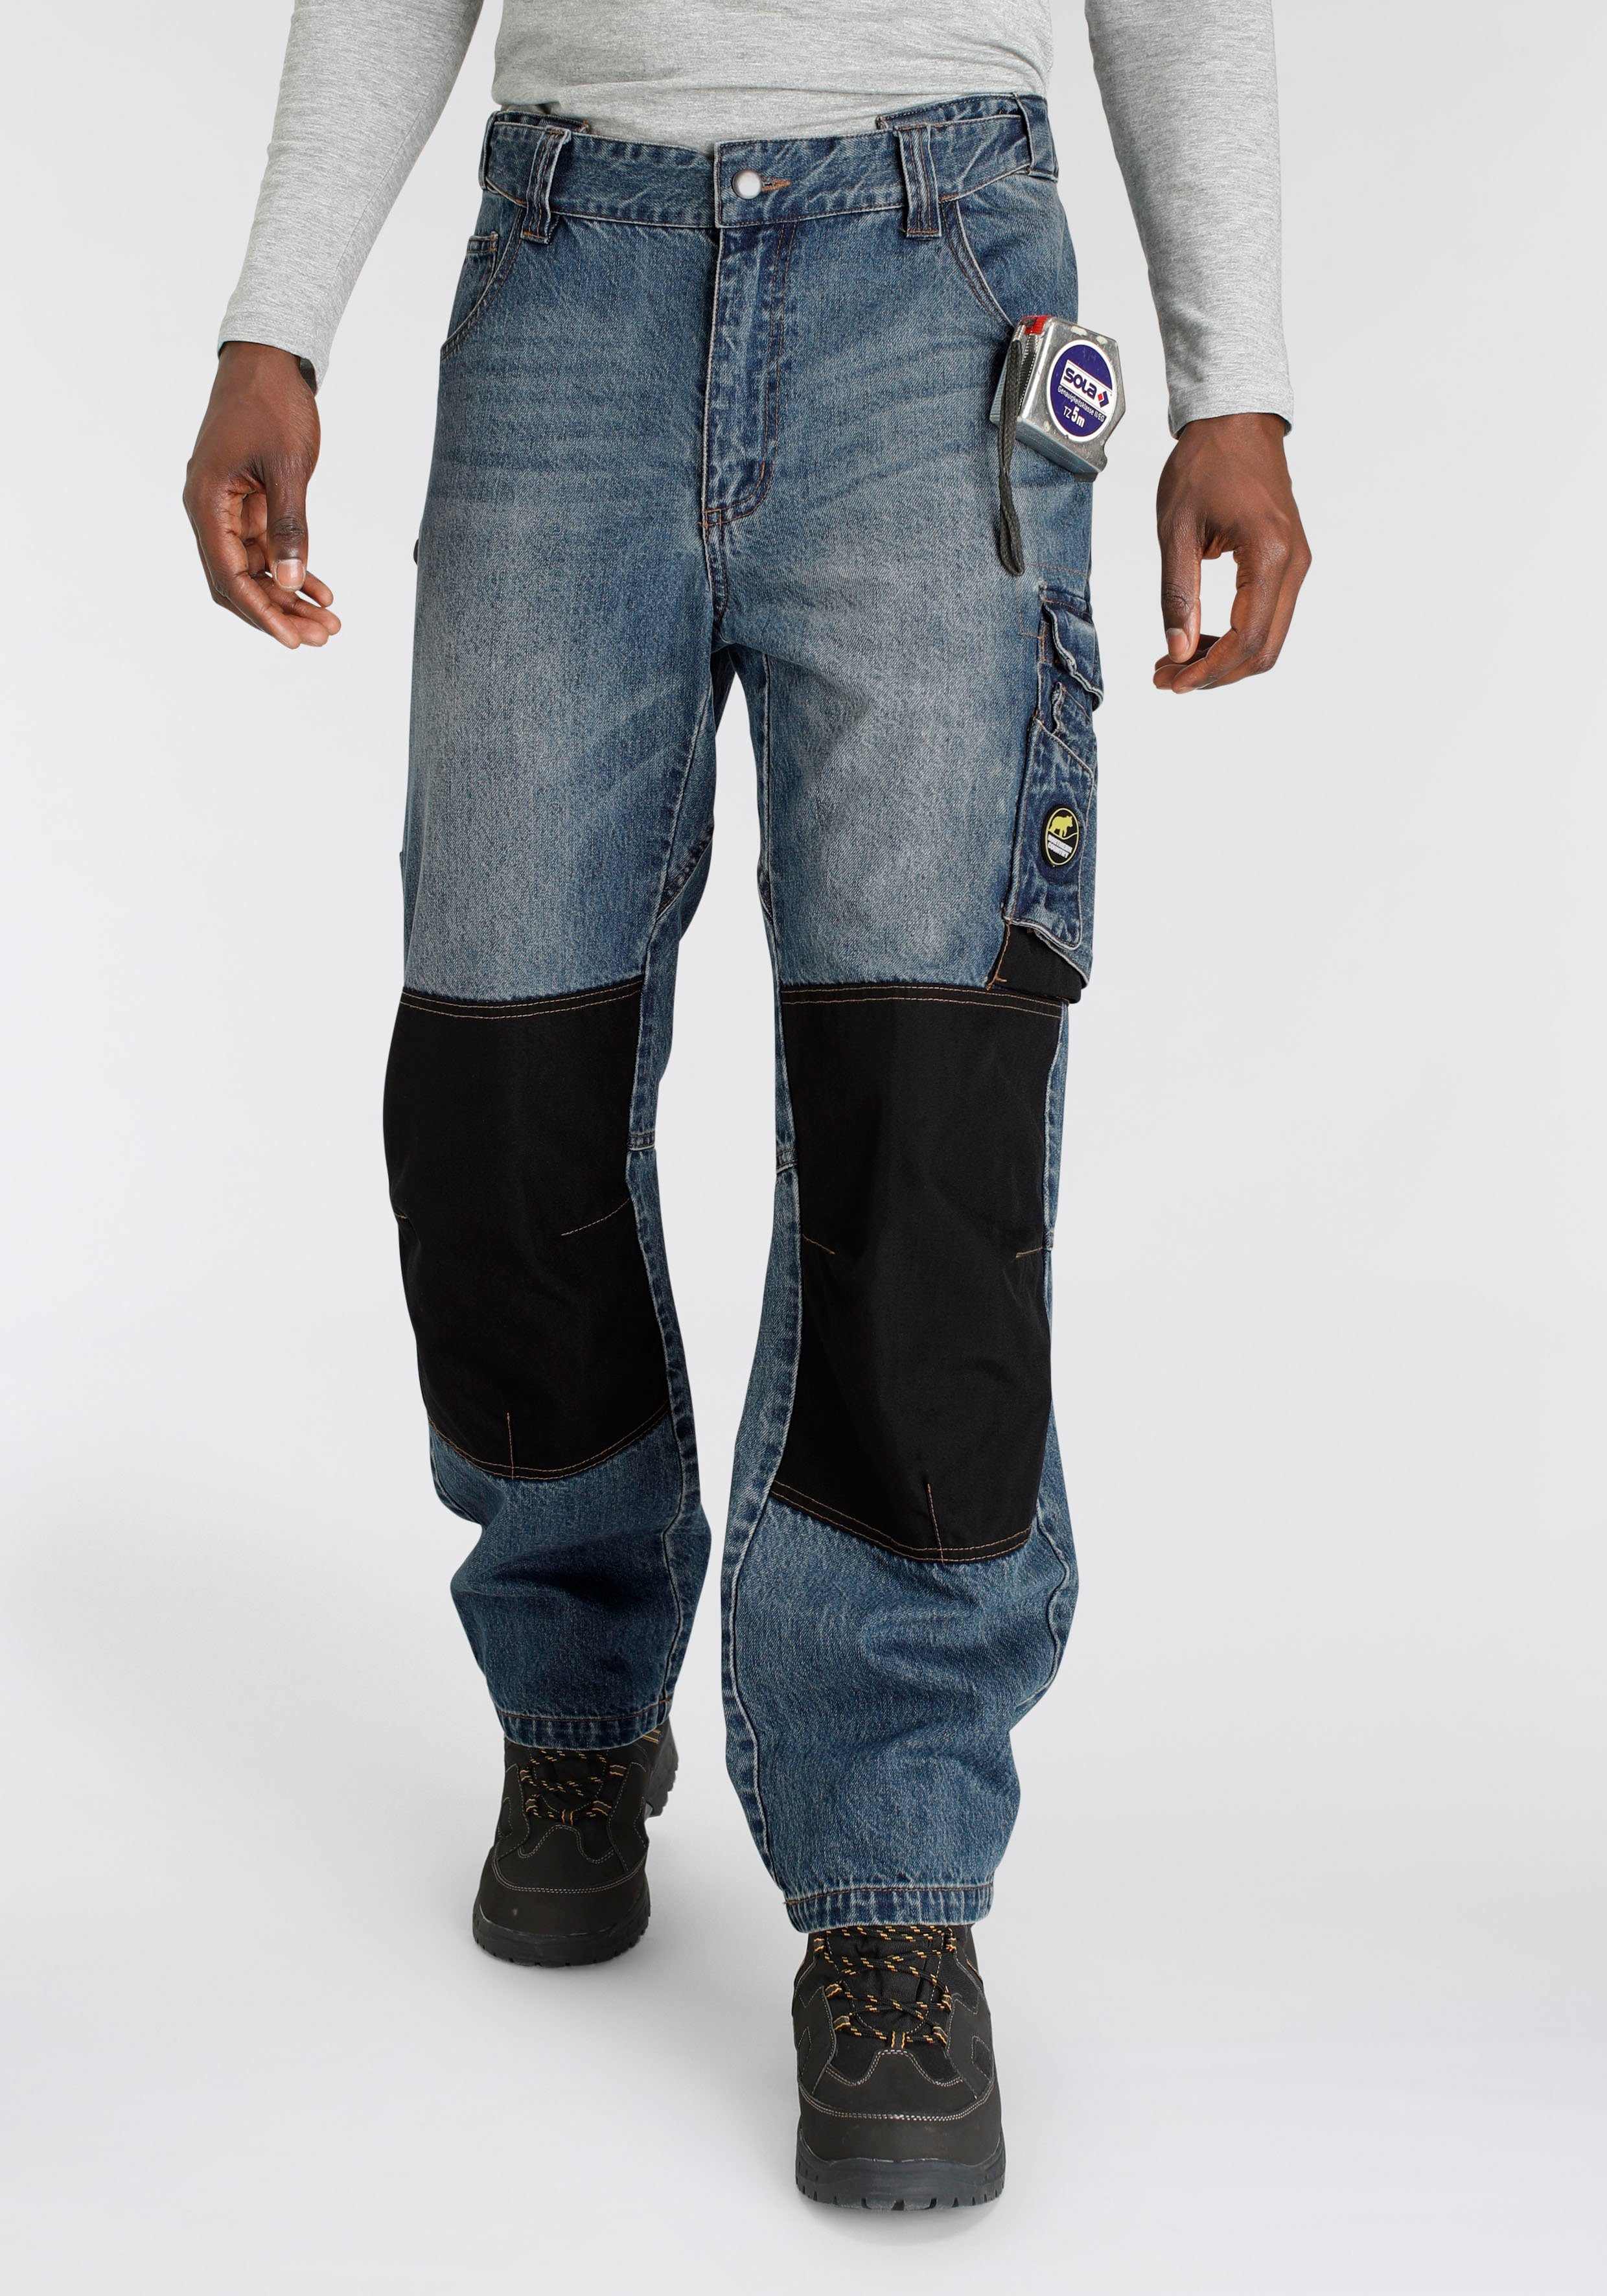 Northern Country Arbeitshose Multipocket Jeans 100% mit dehnbarem comfort Bund, 9 praktischen fit) Jeansstoff, Knieverstärkung Taschen, robuster Baumwolle, (aus aus Cordura